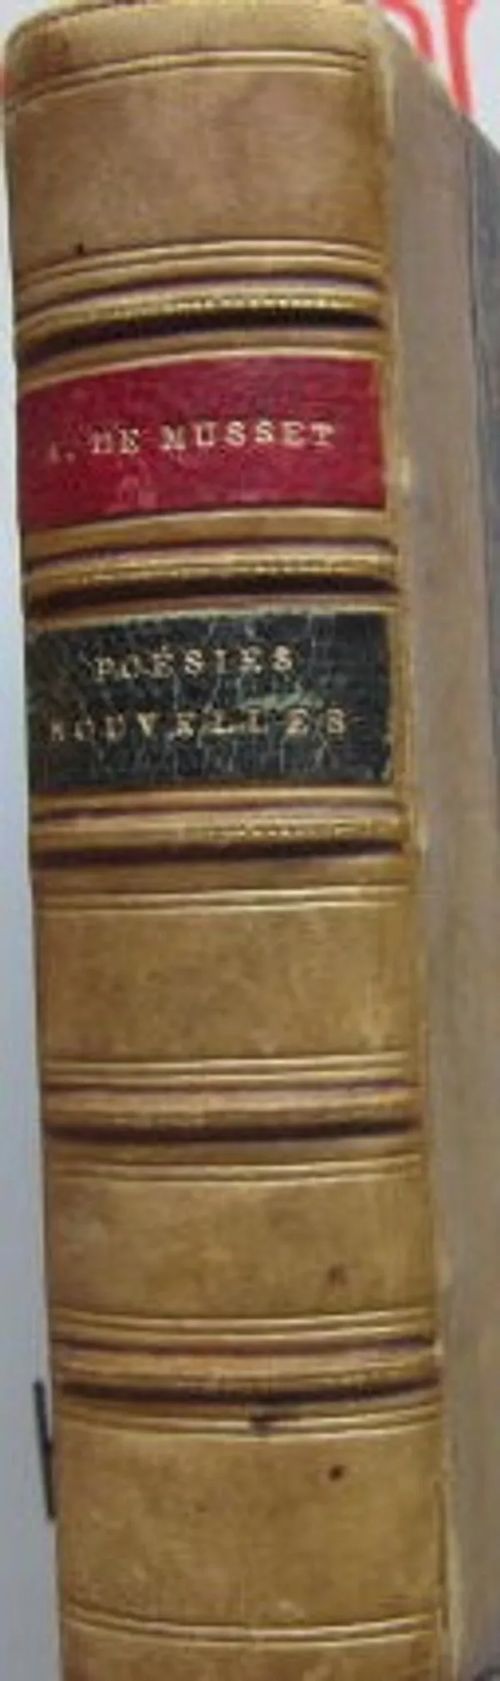 Poesies nouvelles 1836-1852 - de Mussett Alfred | Vesan Kirja | Osta Antikvaarista - Kirjakauppa verkossa